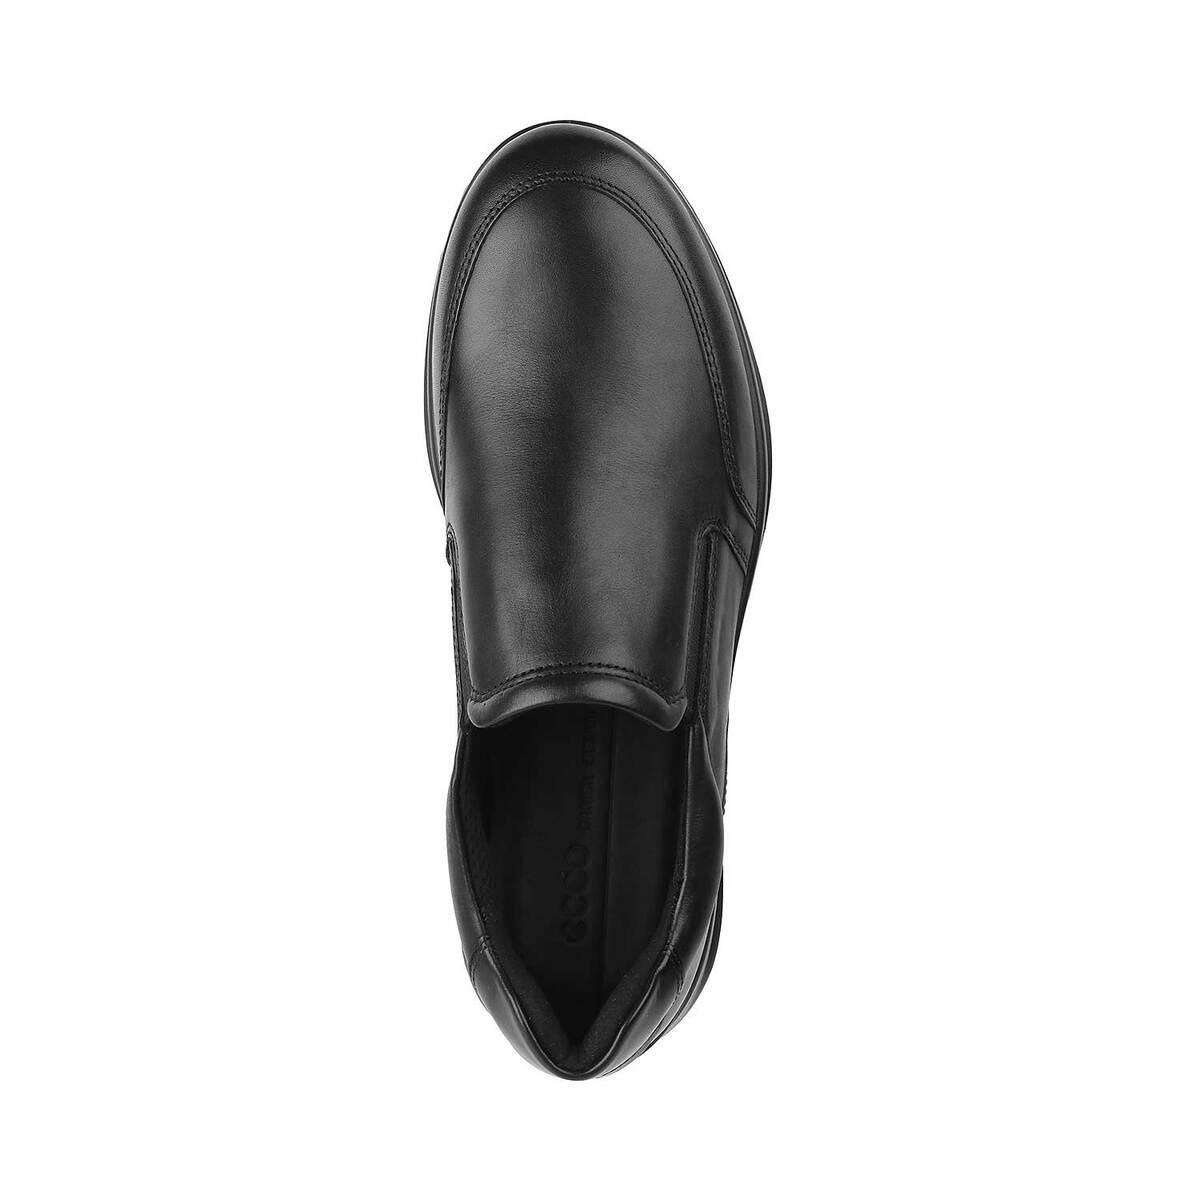 Mens Loafer - Buy Loafer Shoes for Men Online - Mochi Shoes